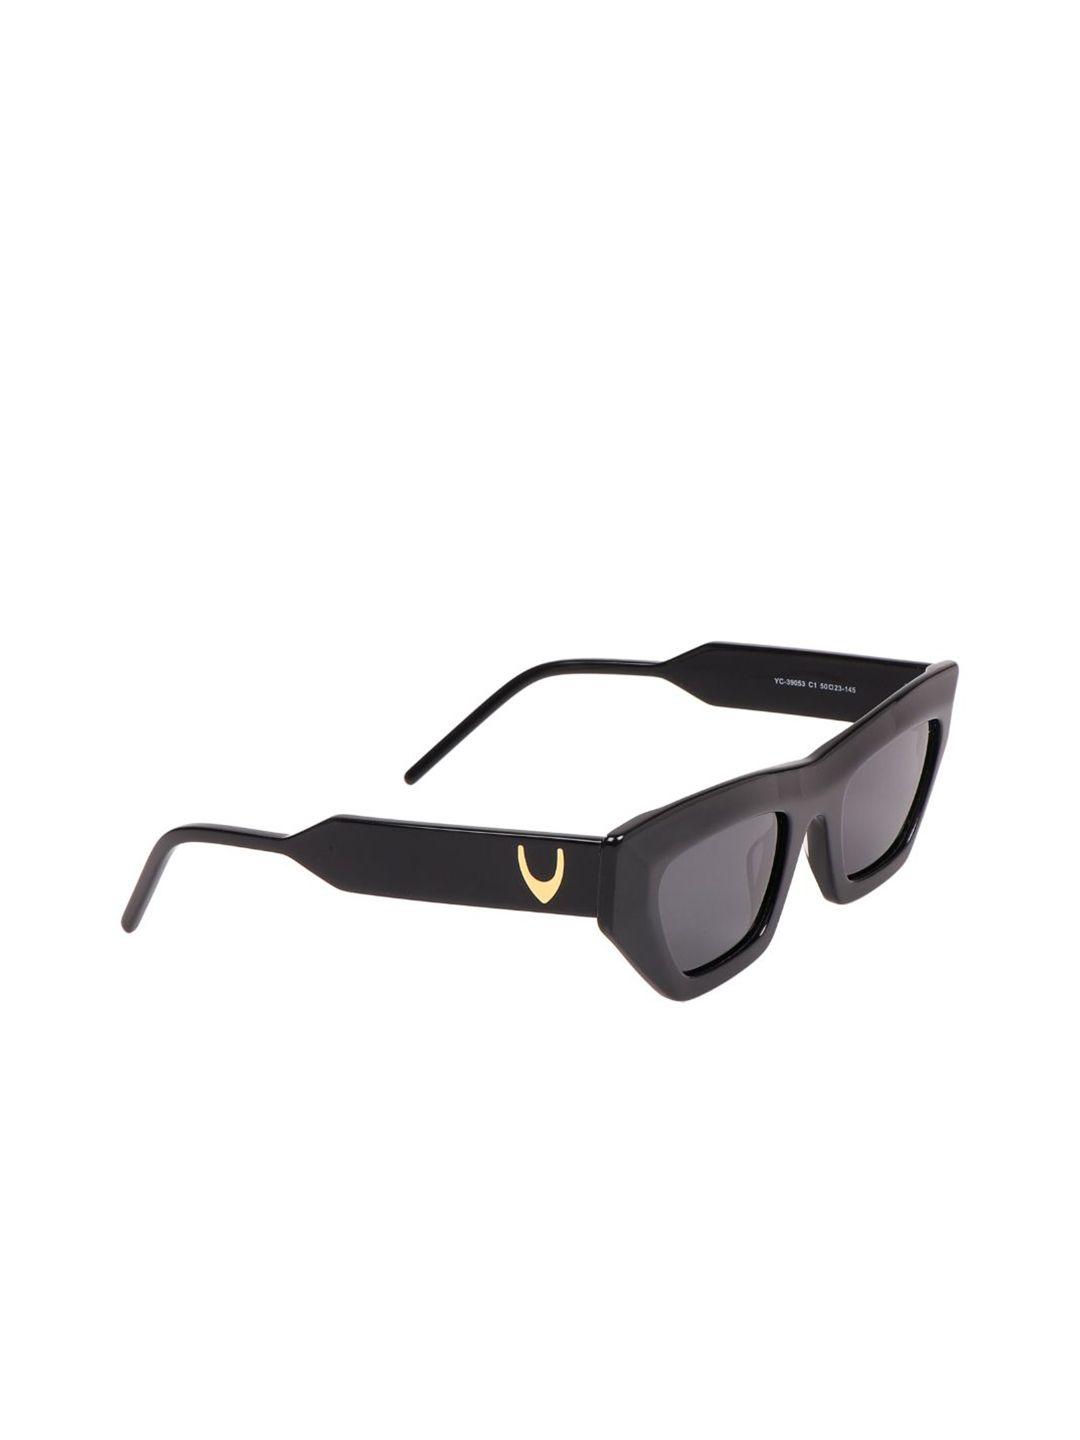 hidesign unisex black lens & black wayfarer sunglasses with uv protected lens - 8903439843557